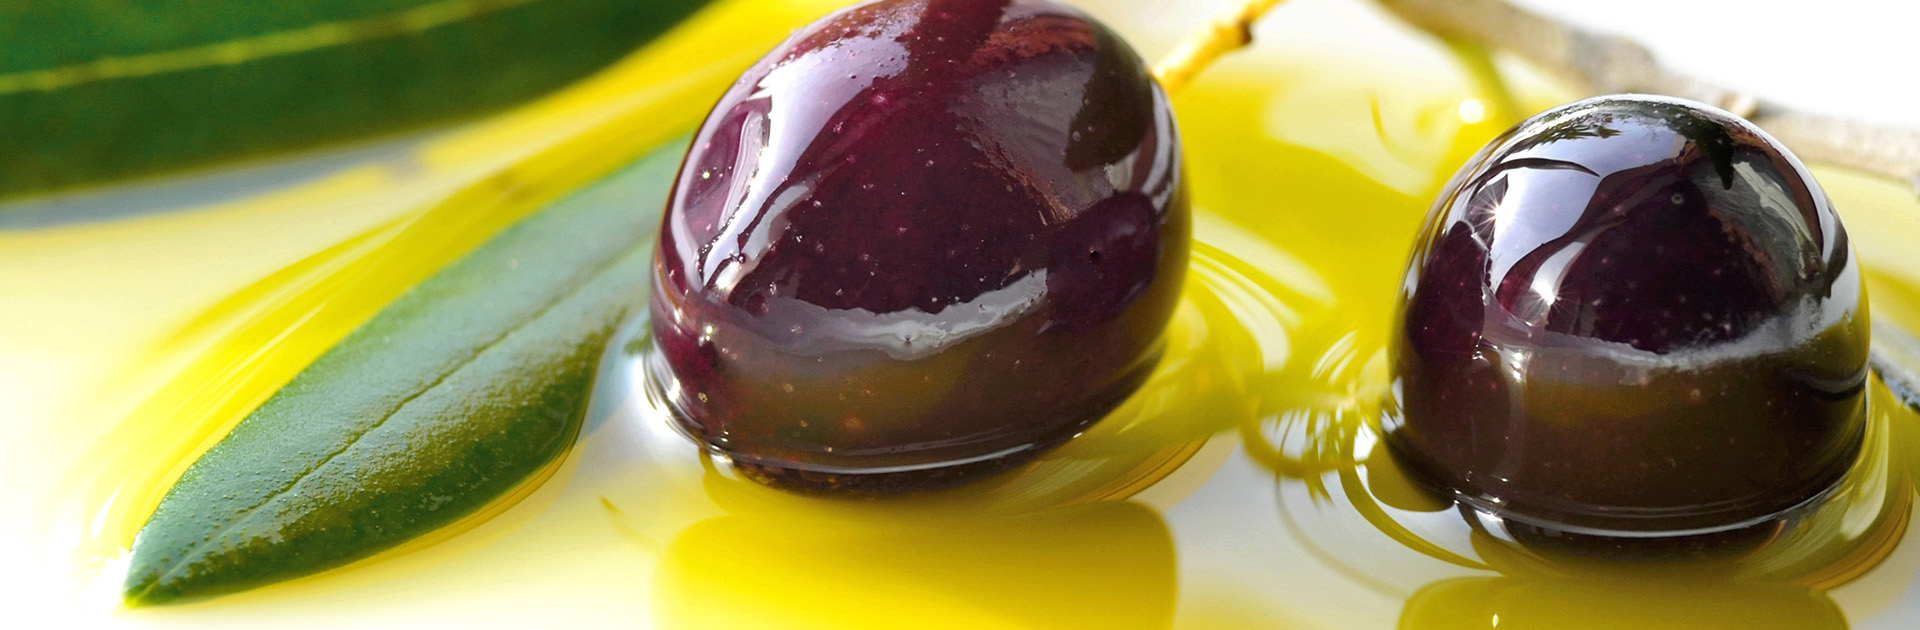 header-olive-oil-1.jpg